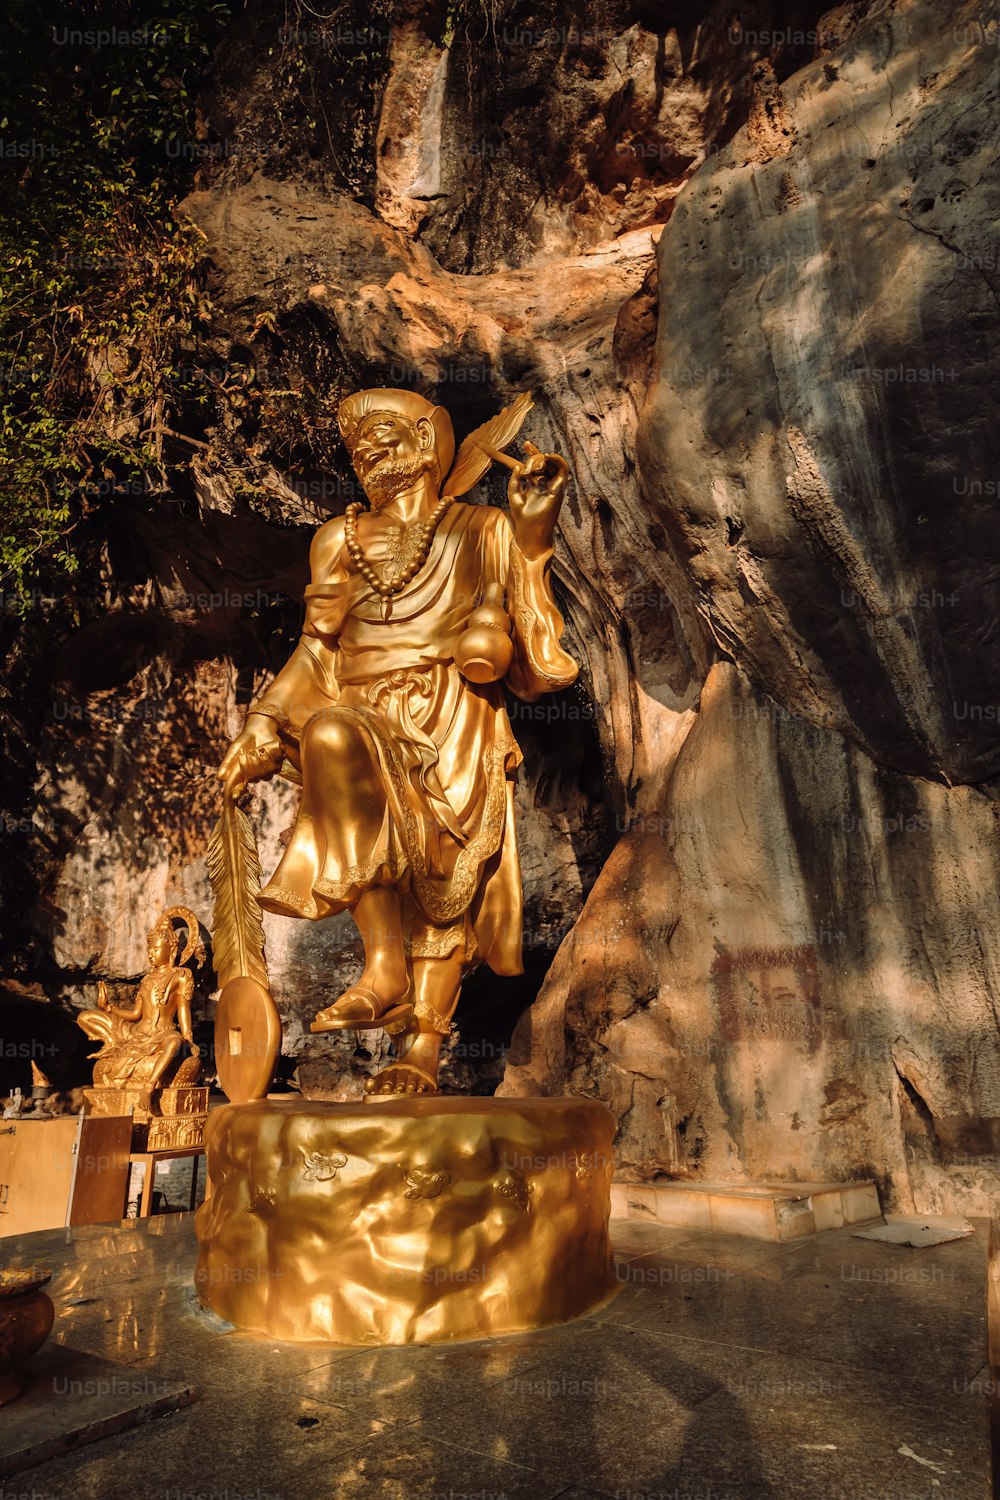 a golden statue of a man holding a sword